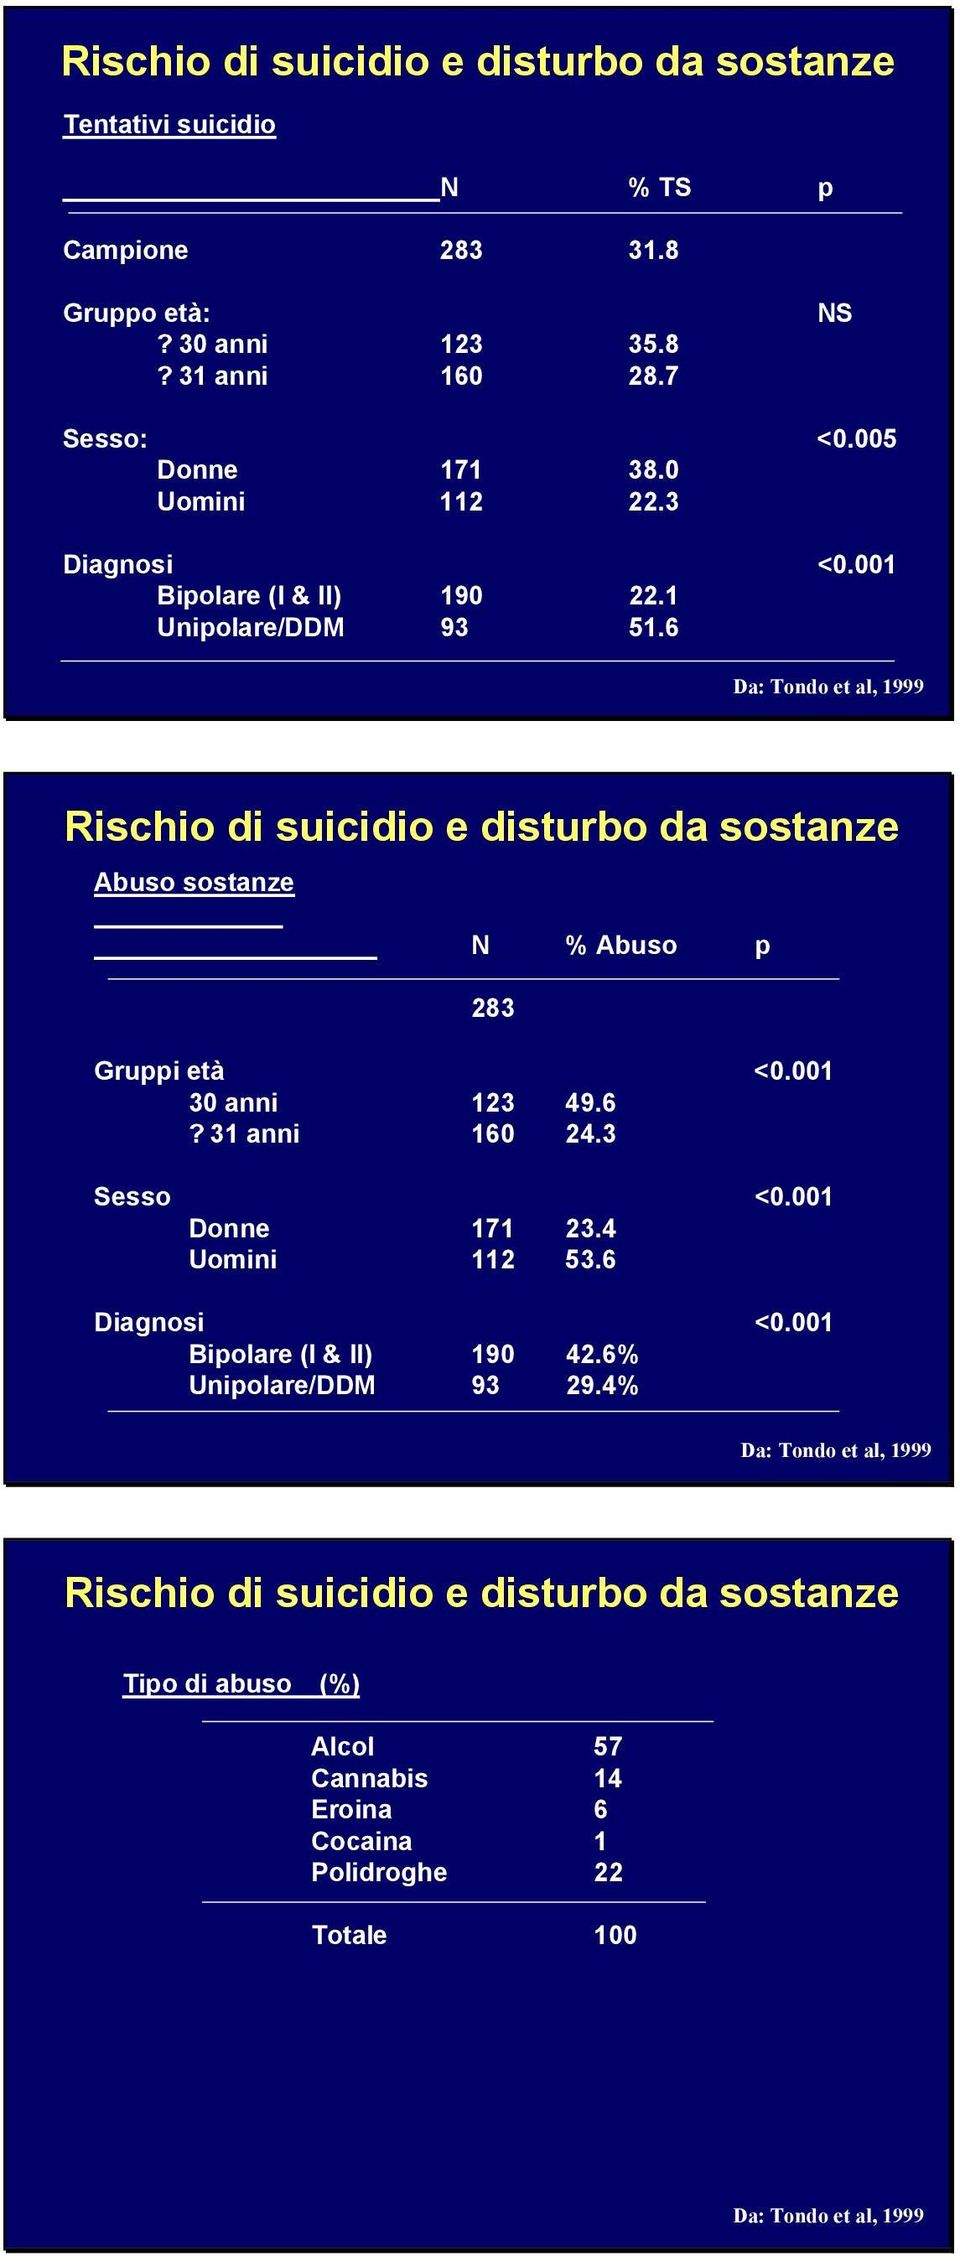 6 Rischio di suicidio e disturbo da sostanze Abuso sostanze N % Abuso p 283 Gruppi età <0.001 30 anni 123 49.6? 31 anni 160 24.3 Sesso <0.